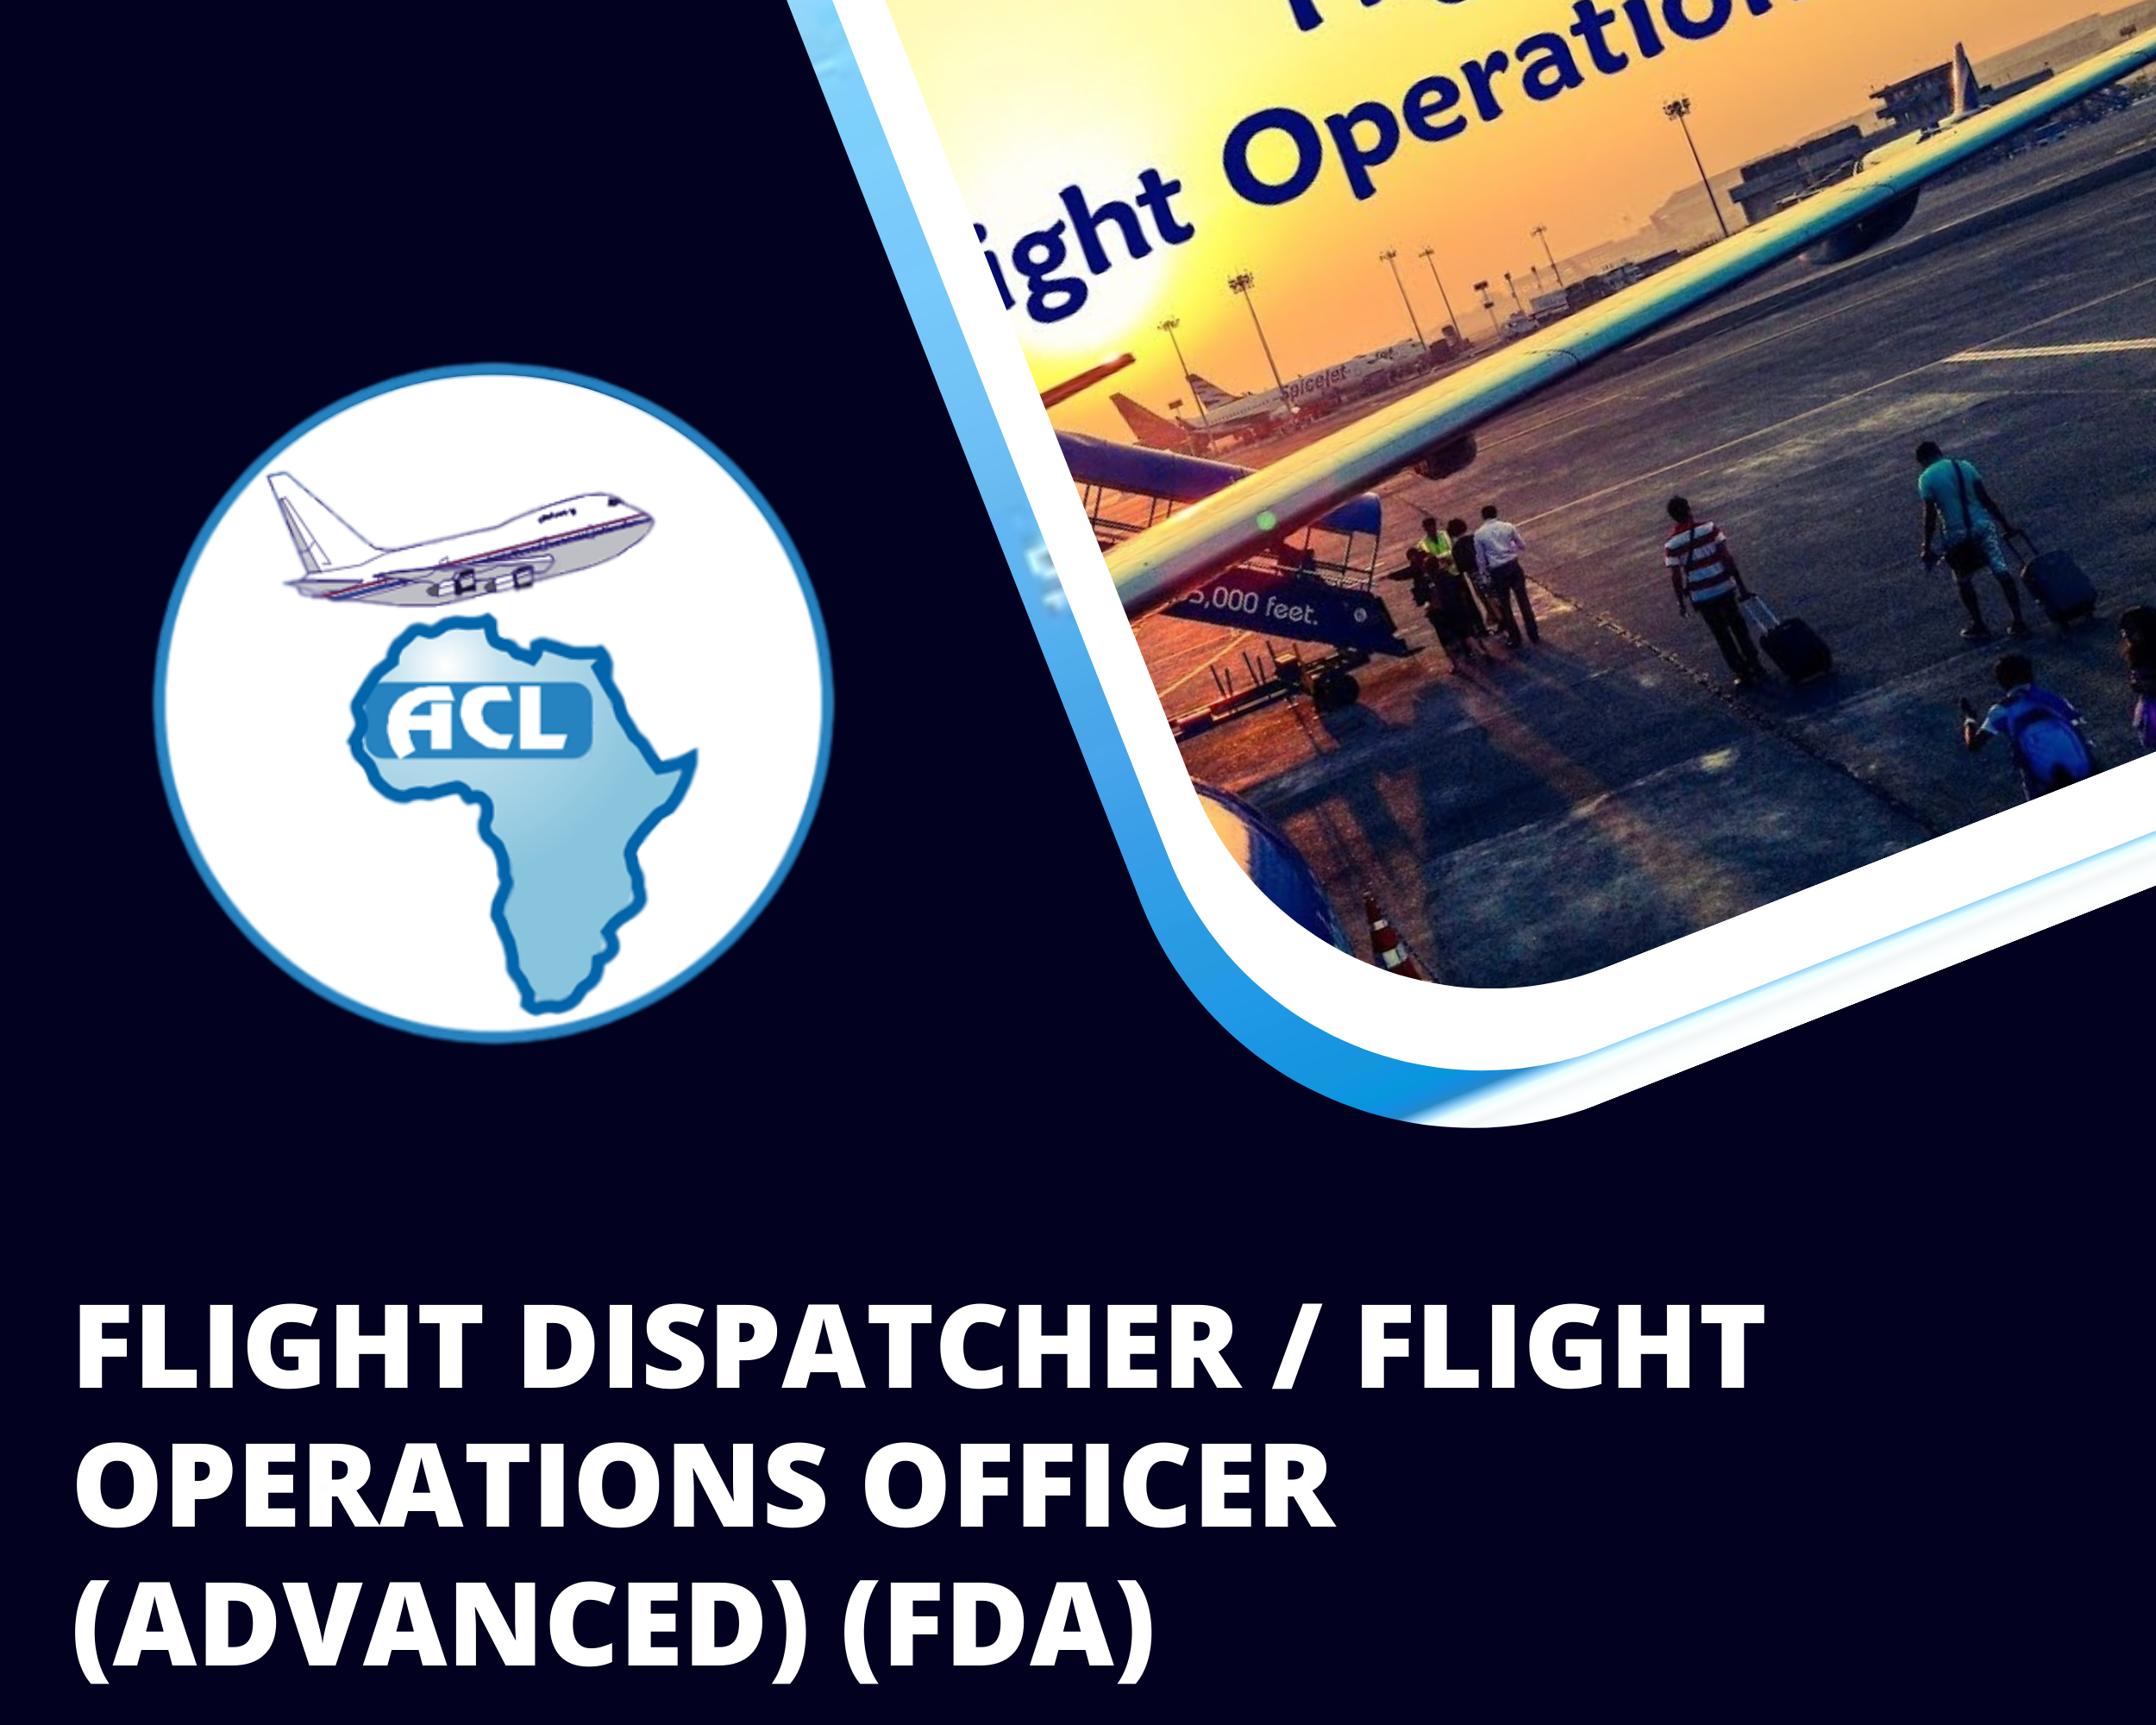 FLIGHT DISPATCHER / FLIGHT OPERATIONS OFFICER (ADVANCED) (FDA)